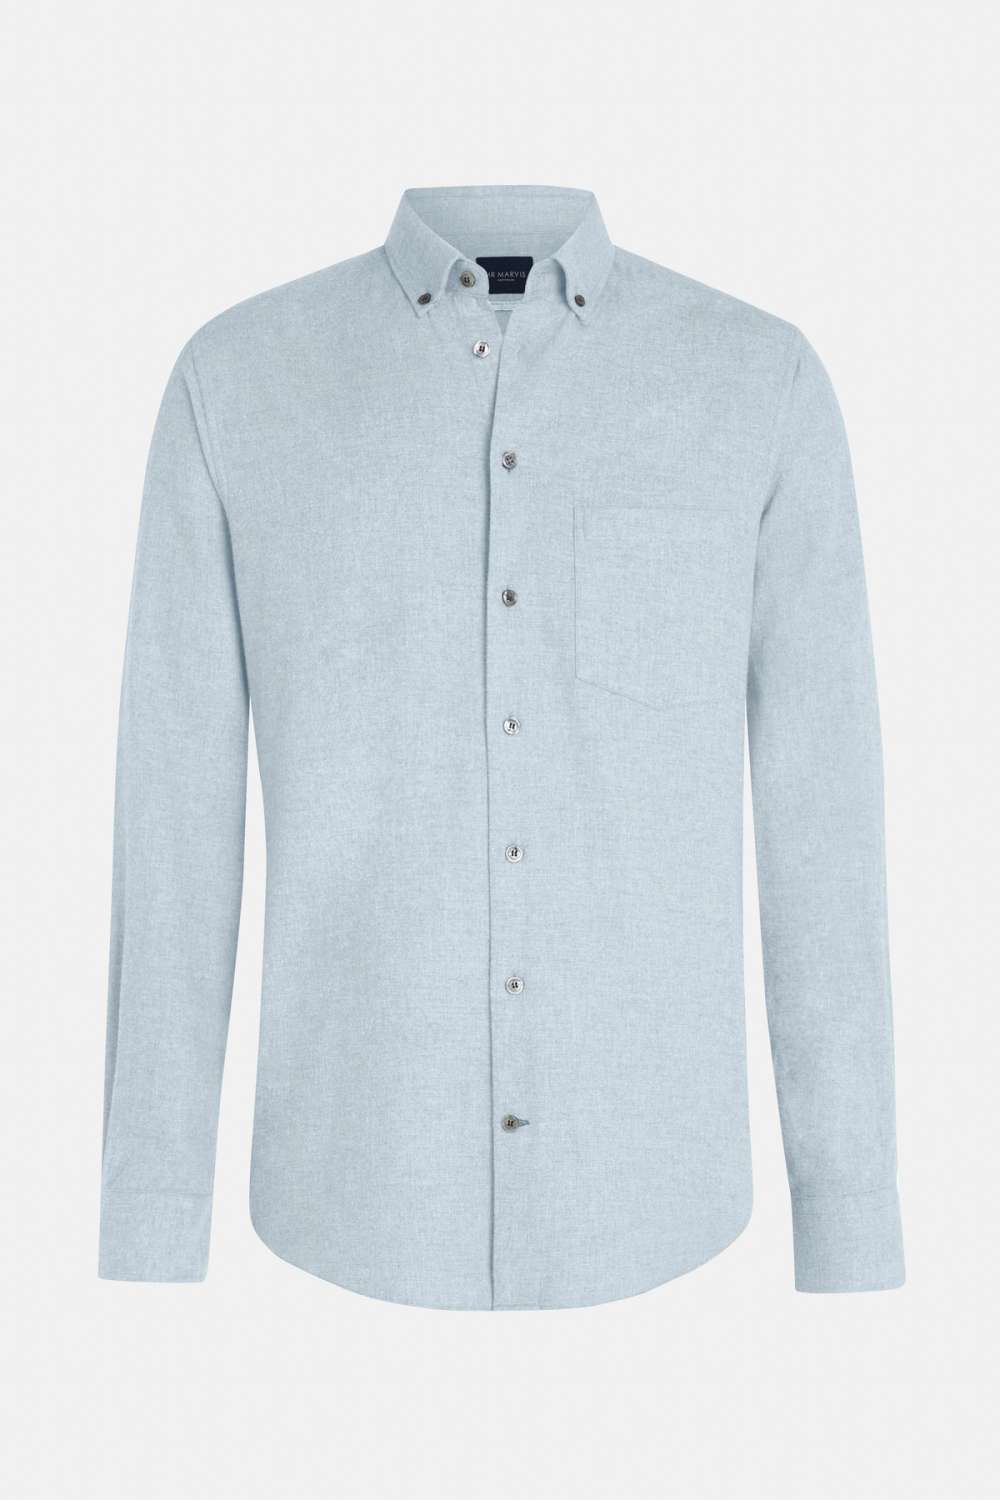 Avenues - Das Flannel Shirt